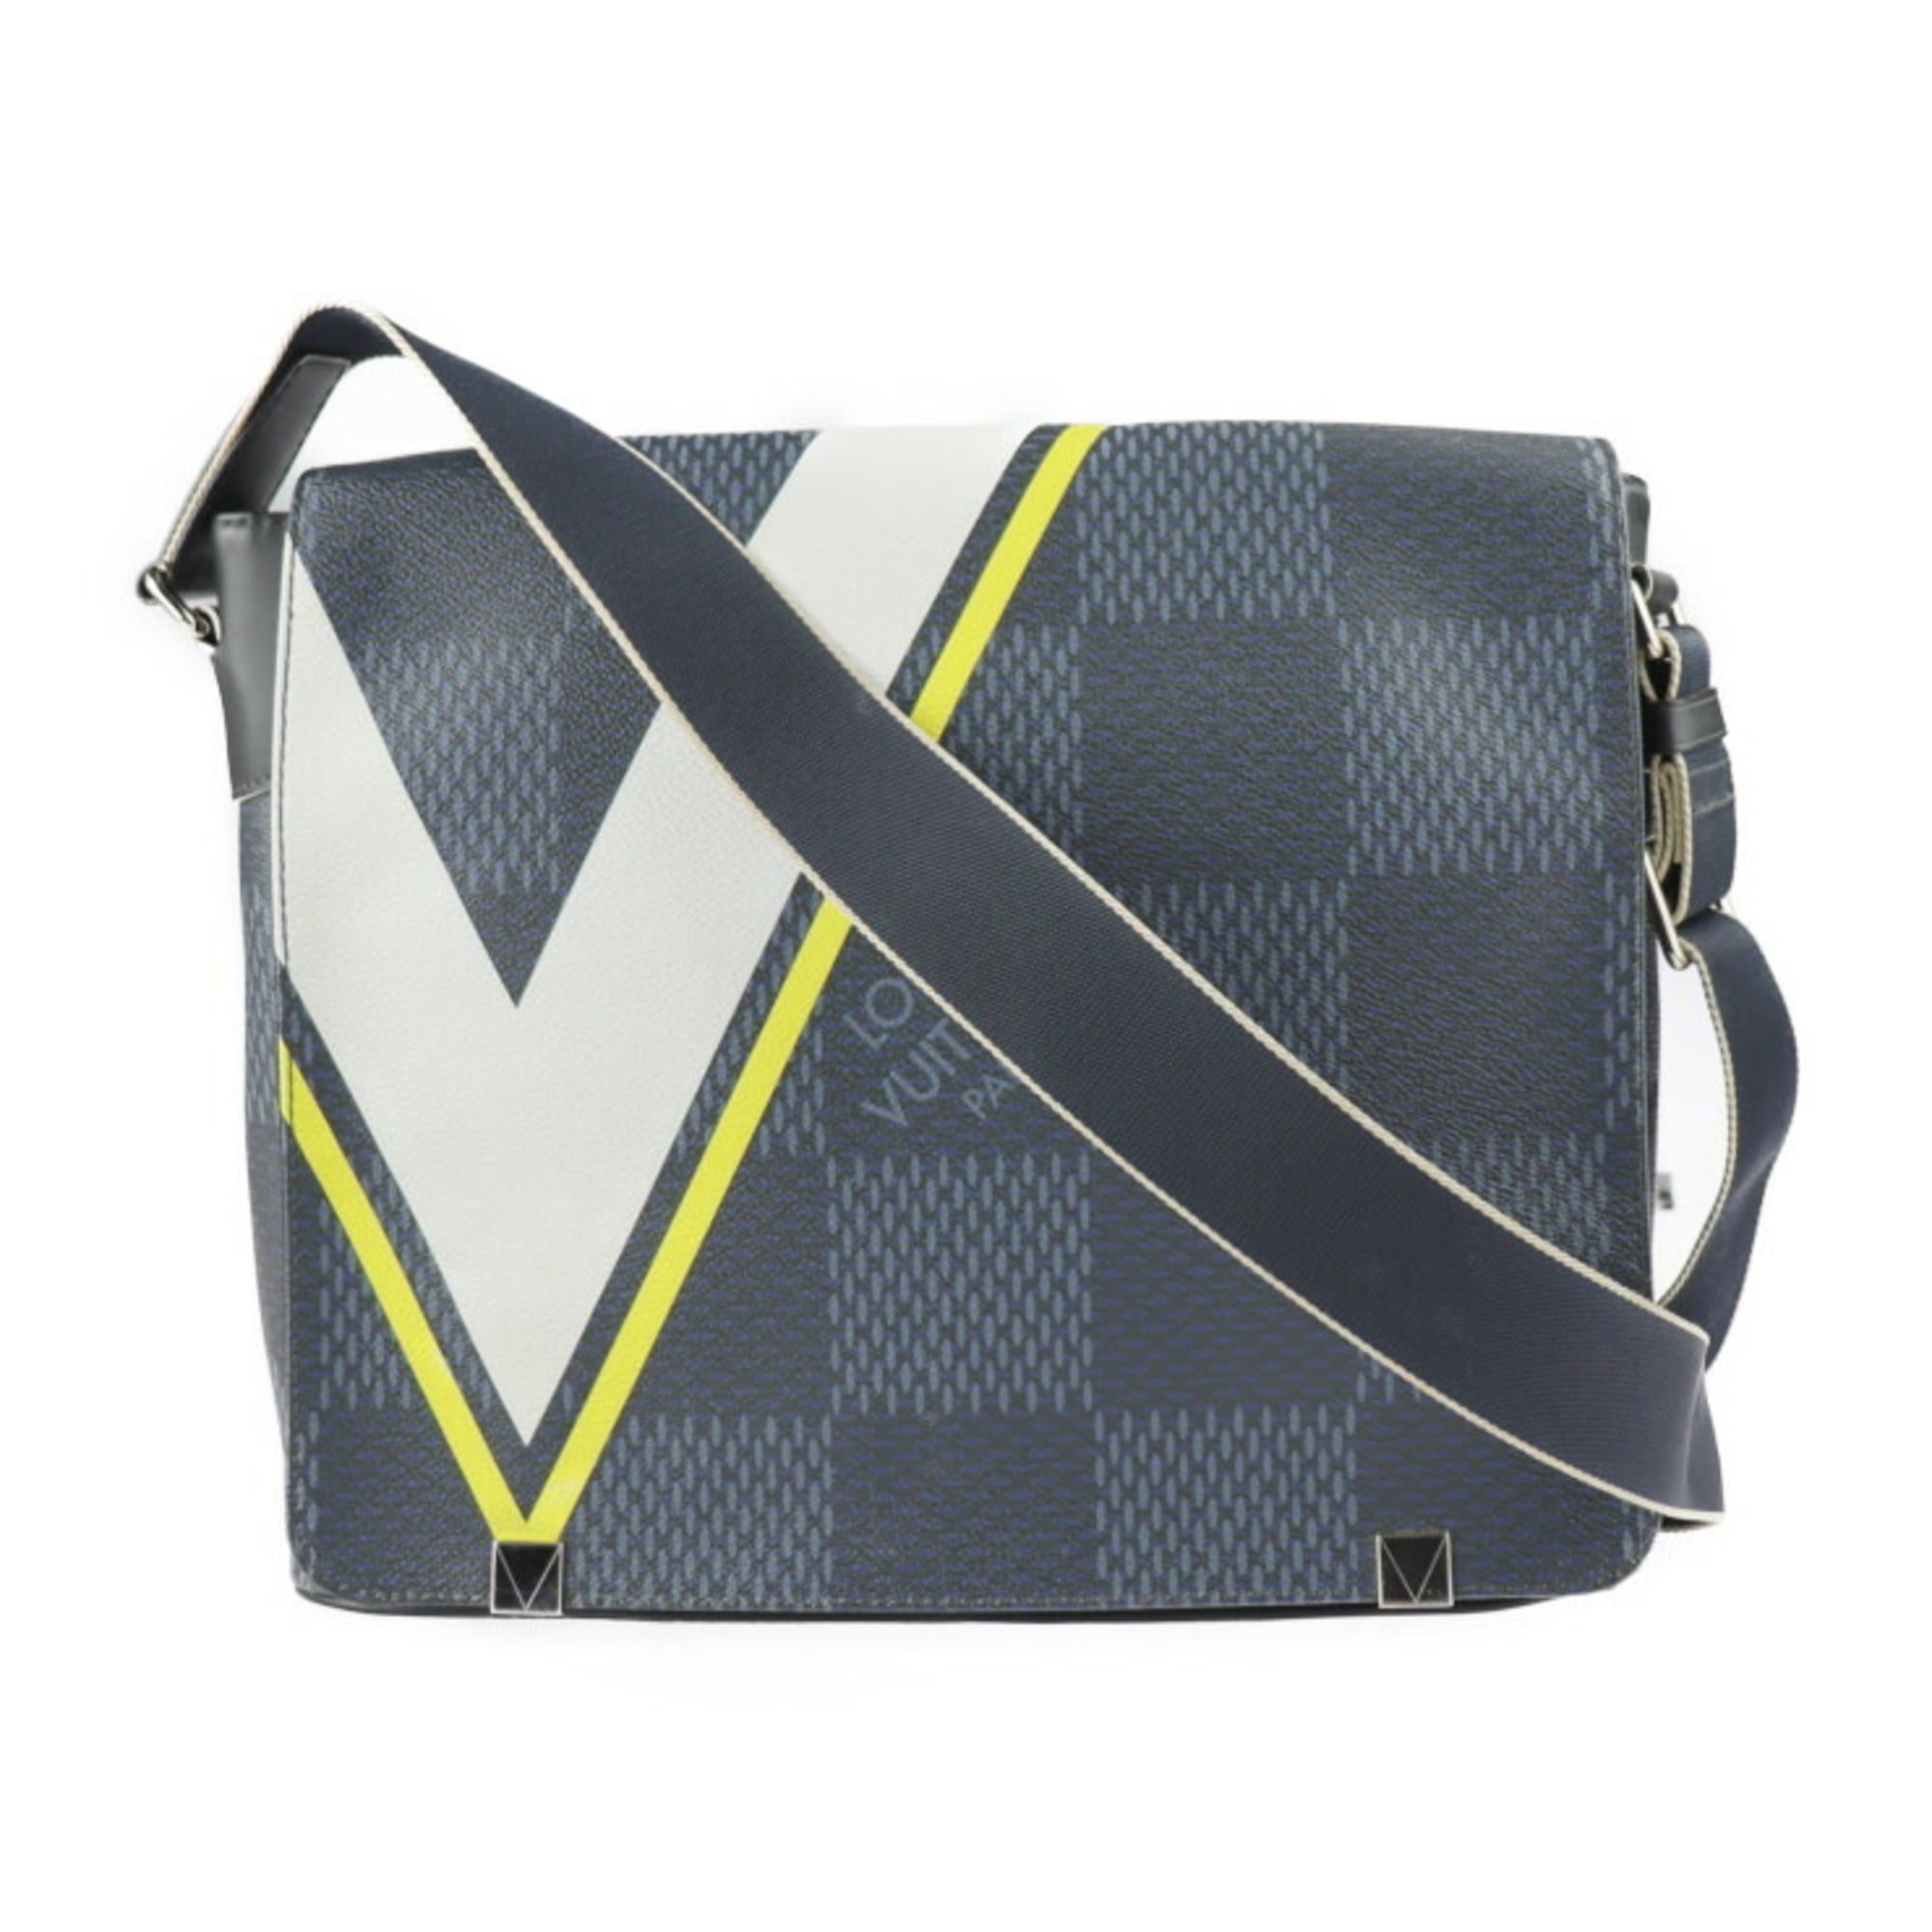 Louis Vuitton Canvas District Sports Shoulder/CrossBody Bag, White